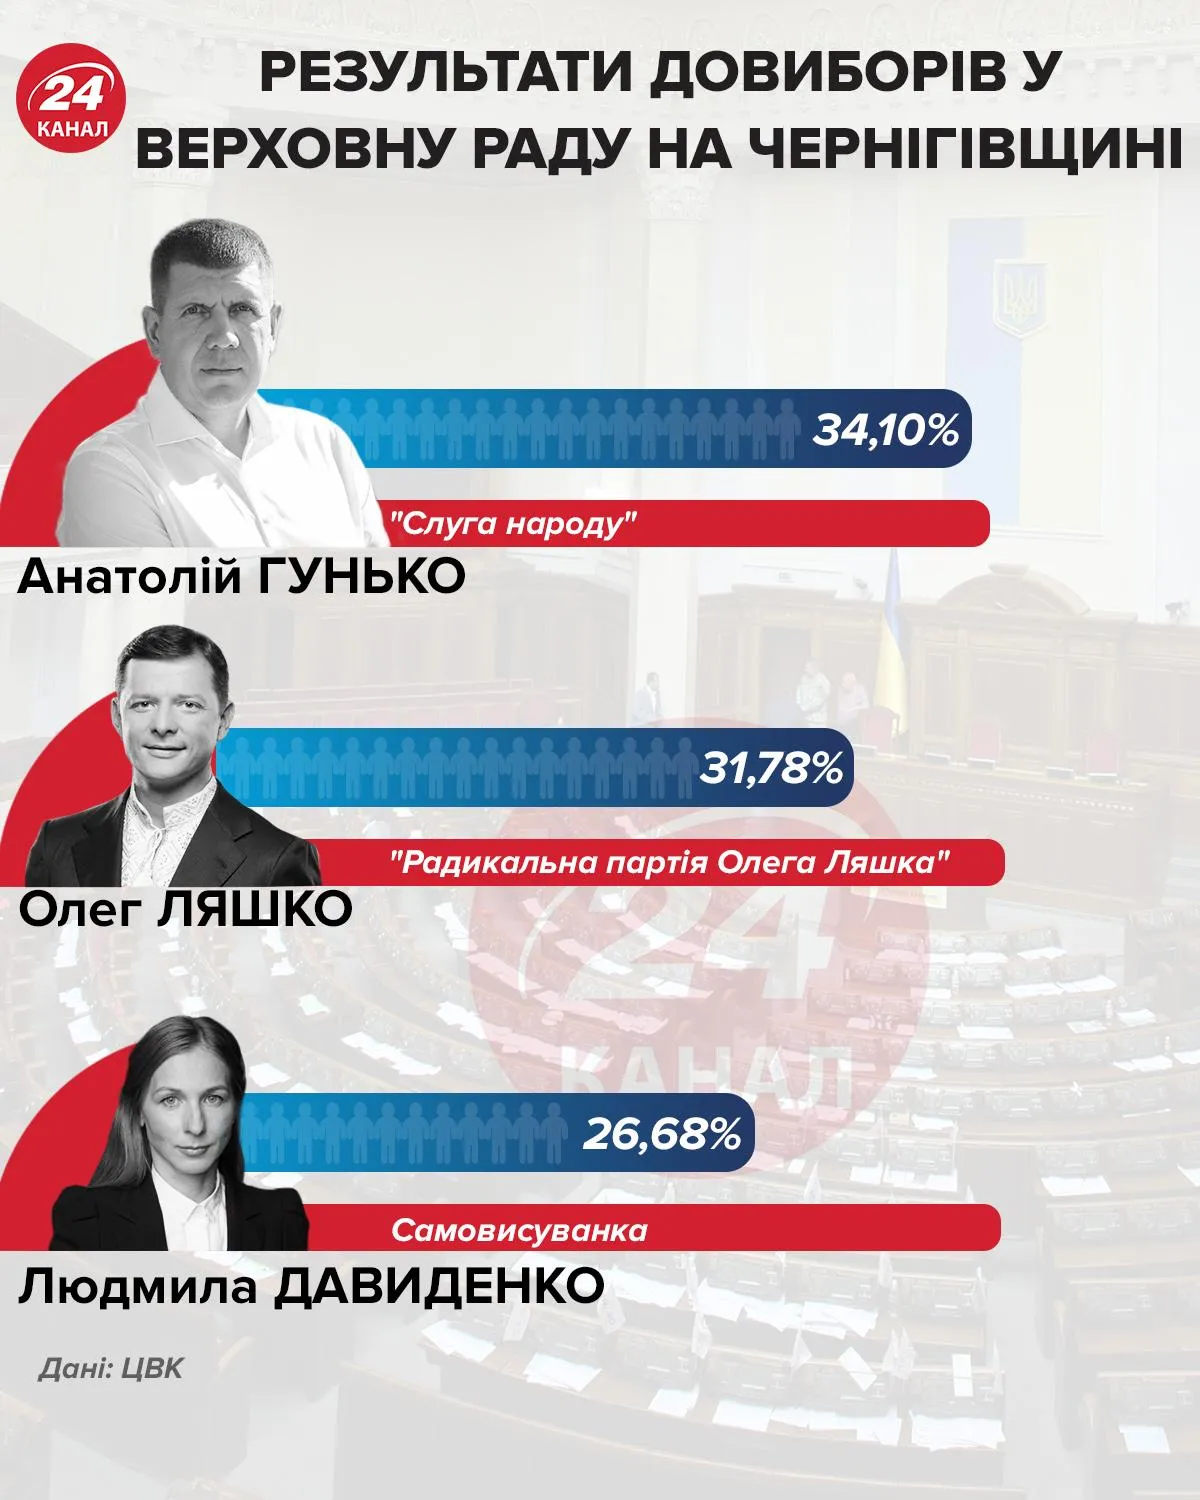 Результати довиборів у Верховну Раду на Чернігівщини інфографіка 24 канал